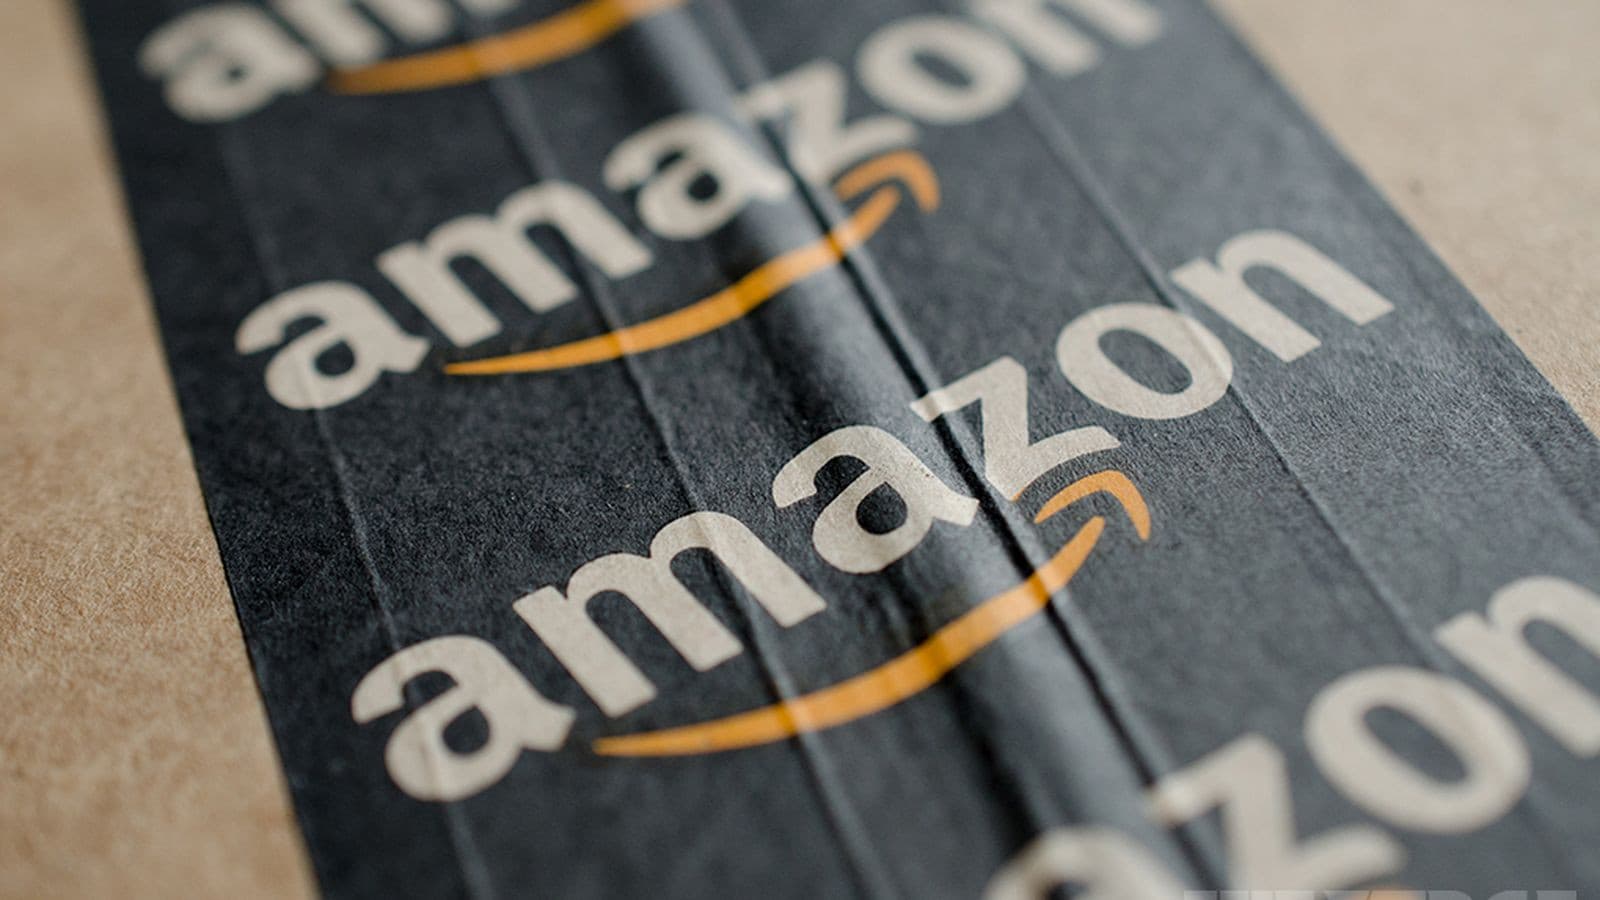 Yerel İşletmeler İçin Fırsat: Amazon.com.tr Faaliyete Başladı!